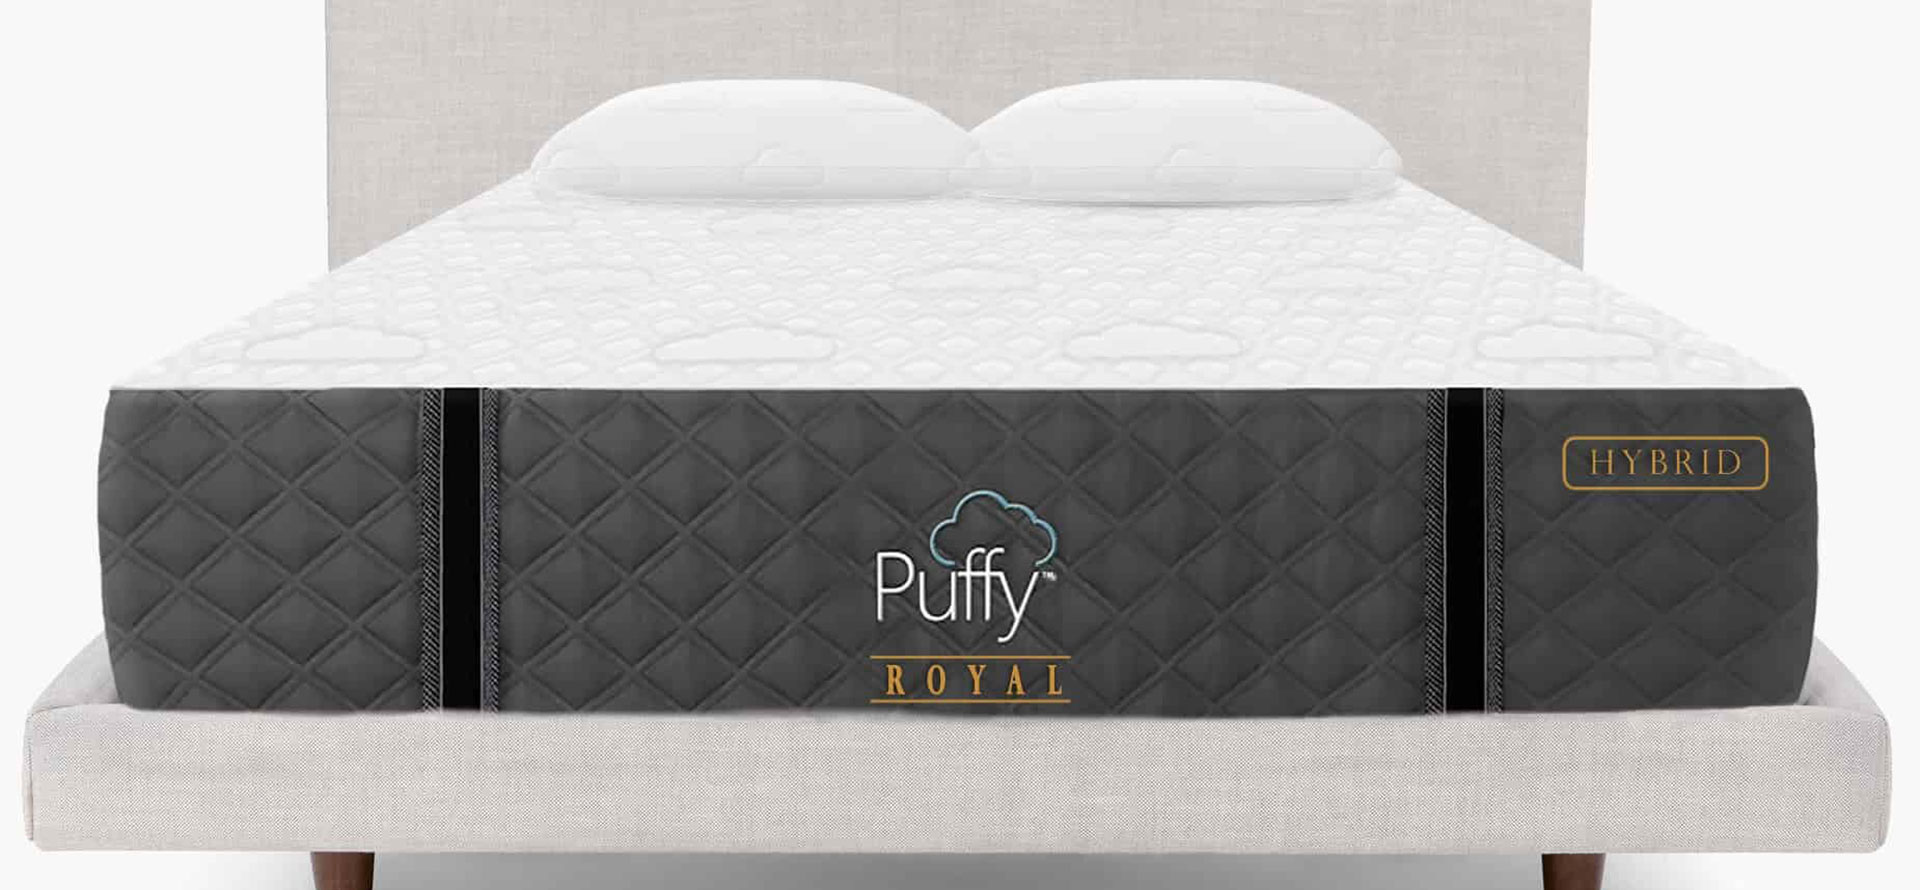 Puffy royal mattress.